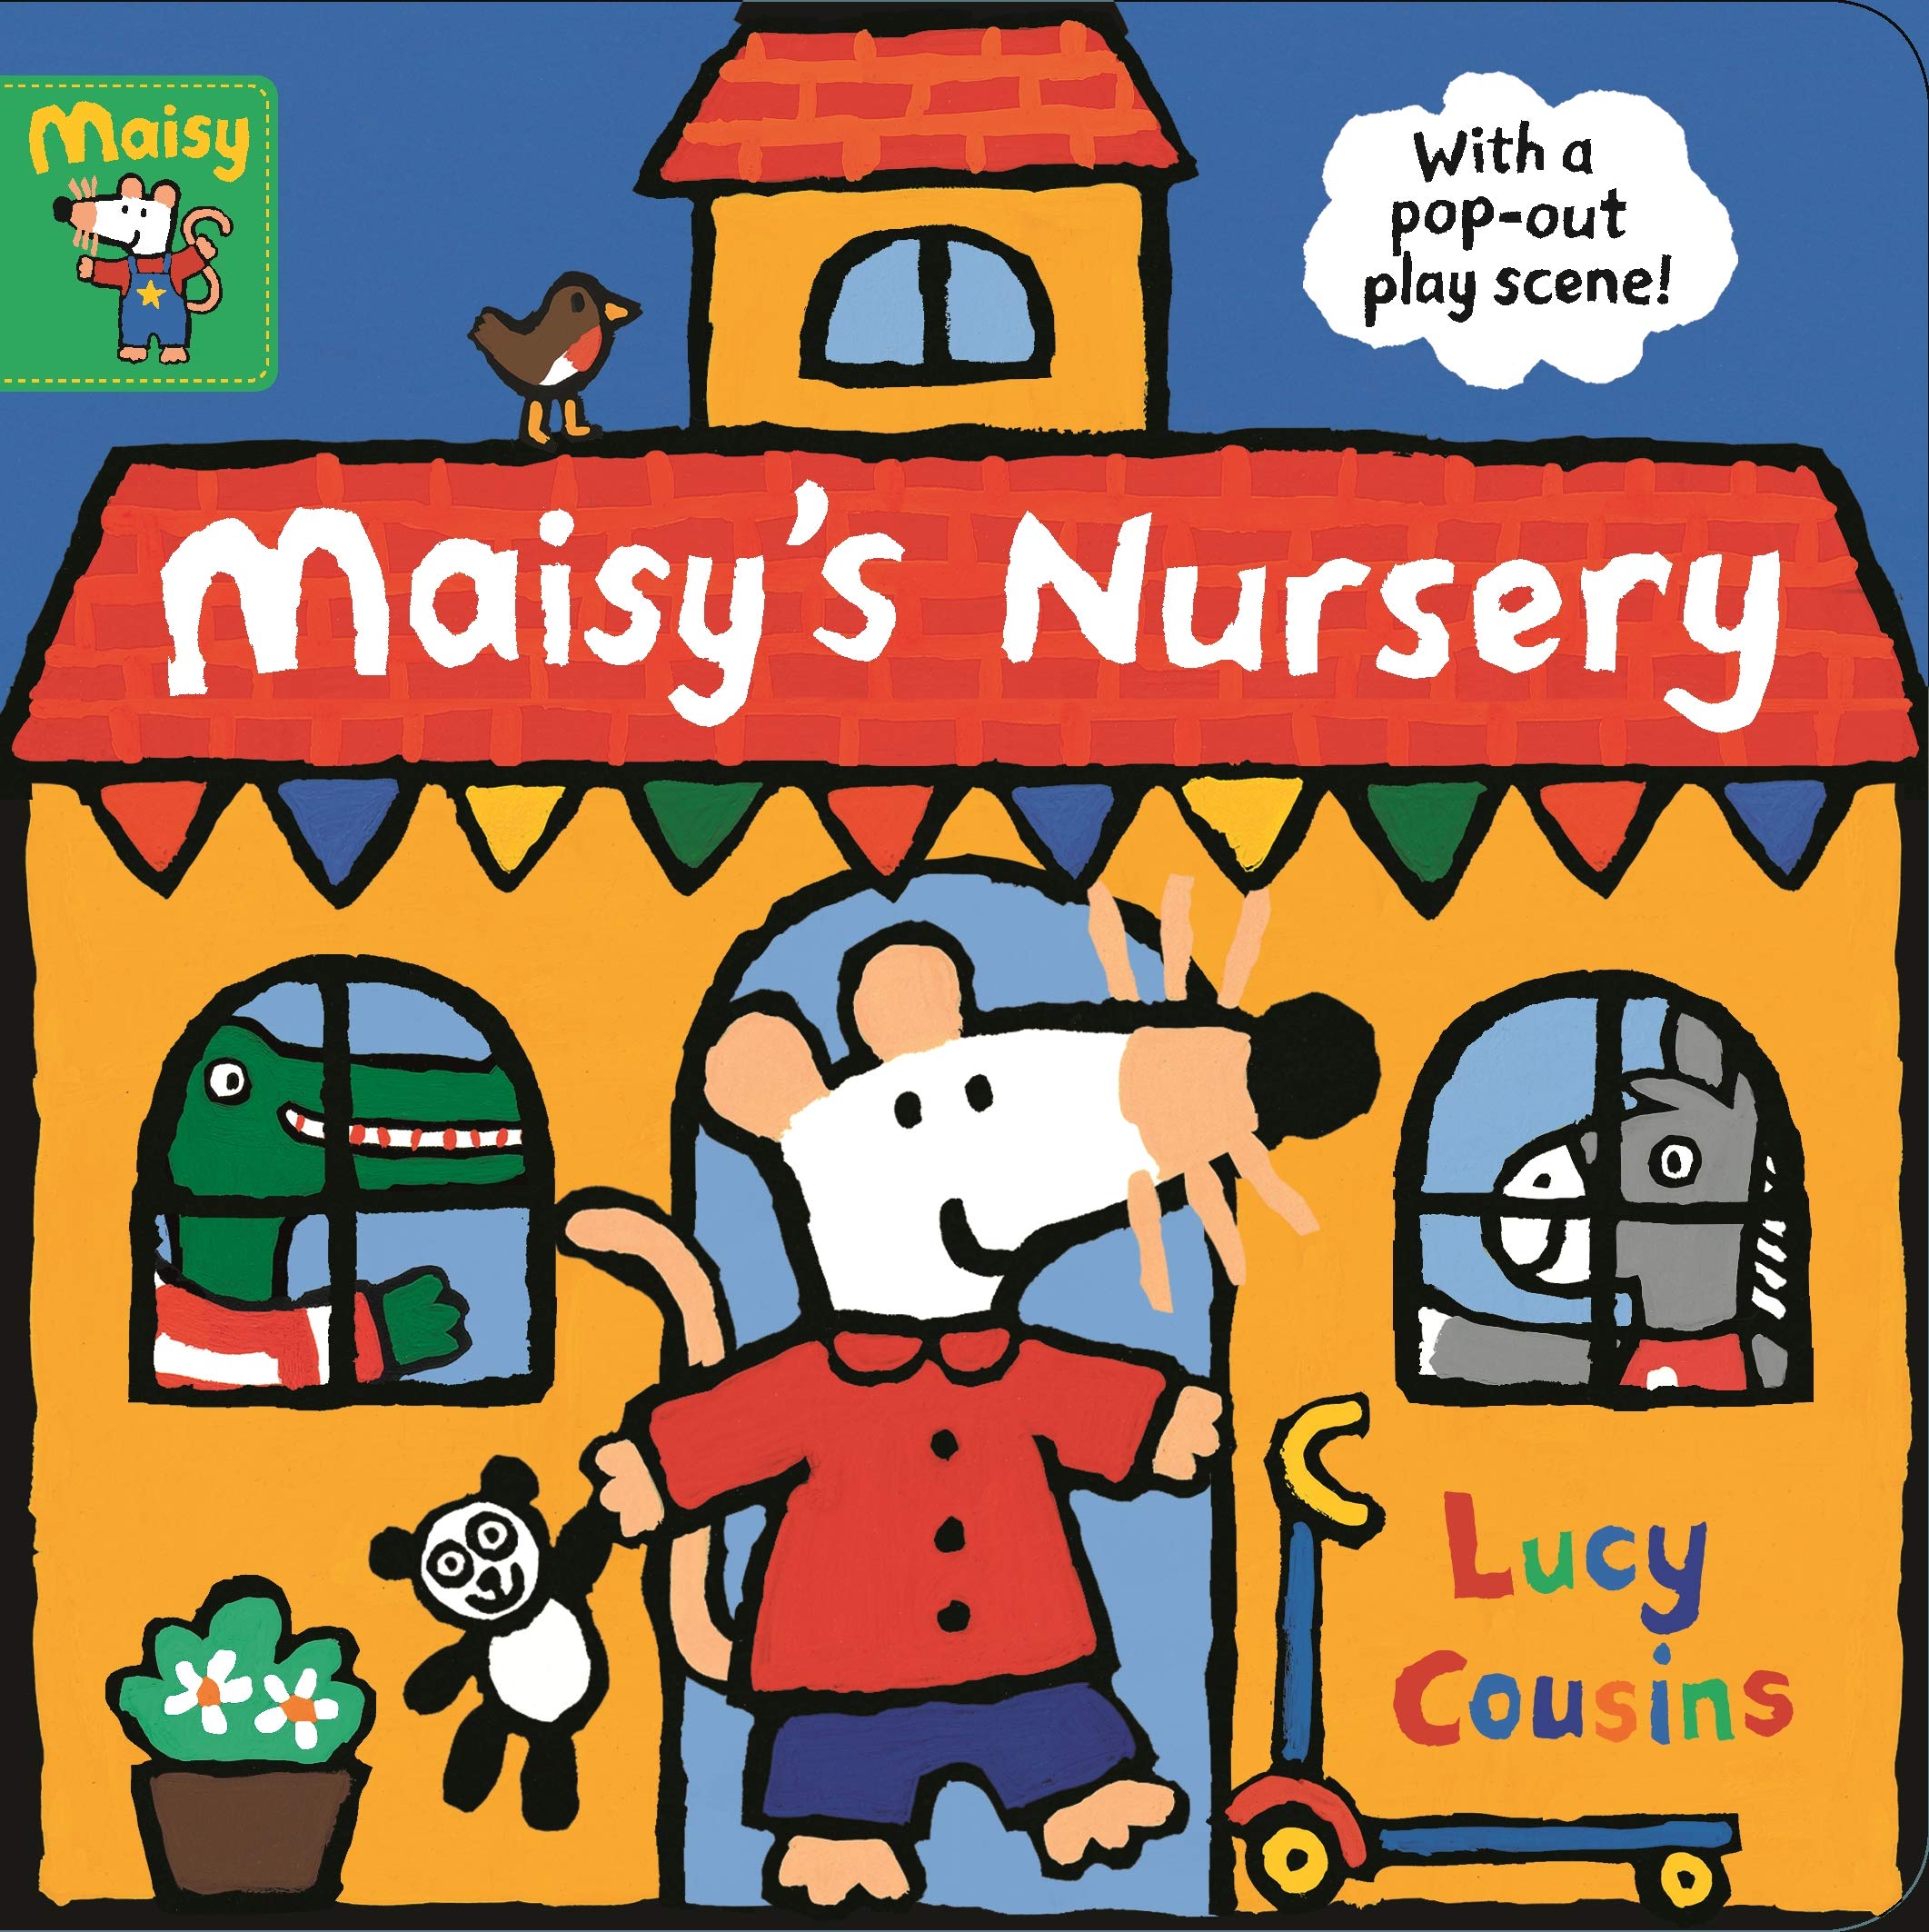 Maisy's Nursery: With a pop-out play scene!